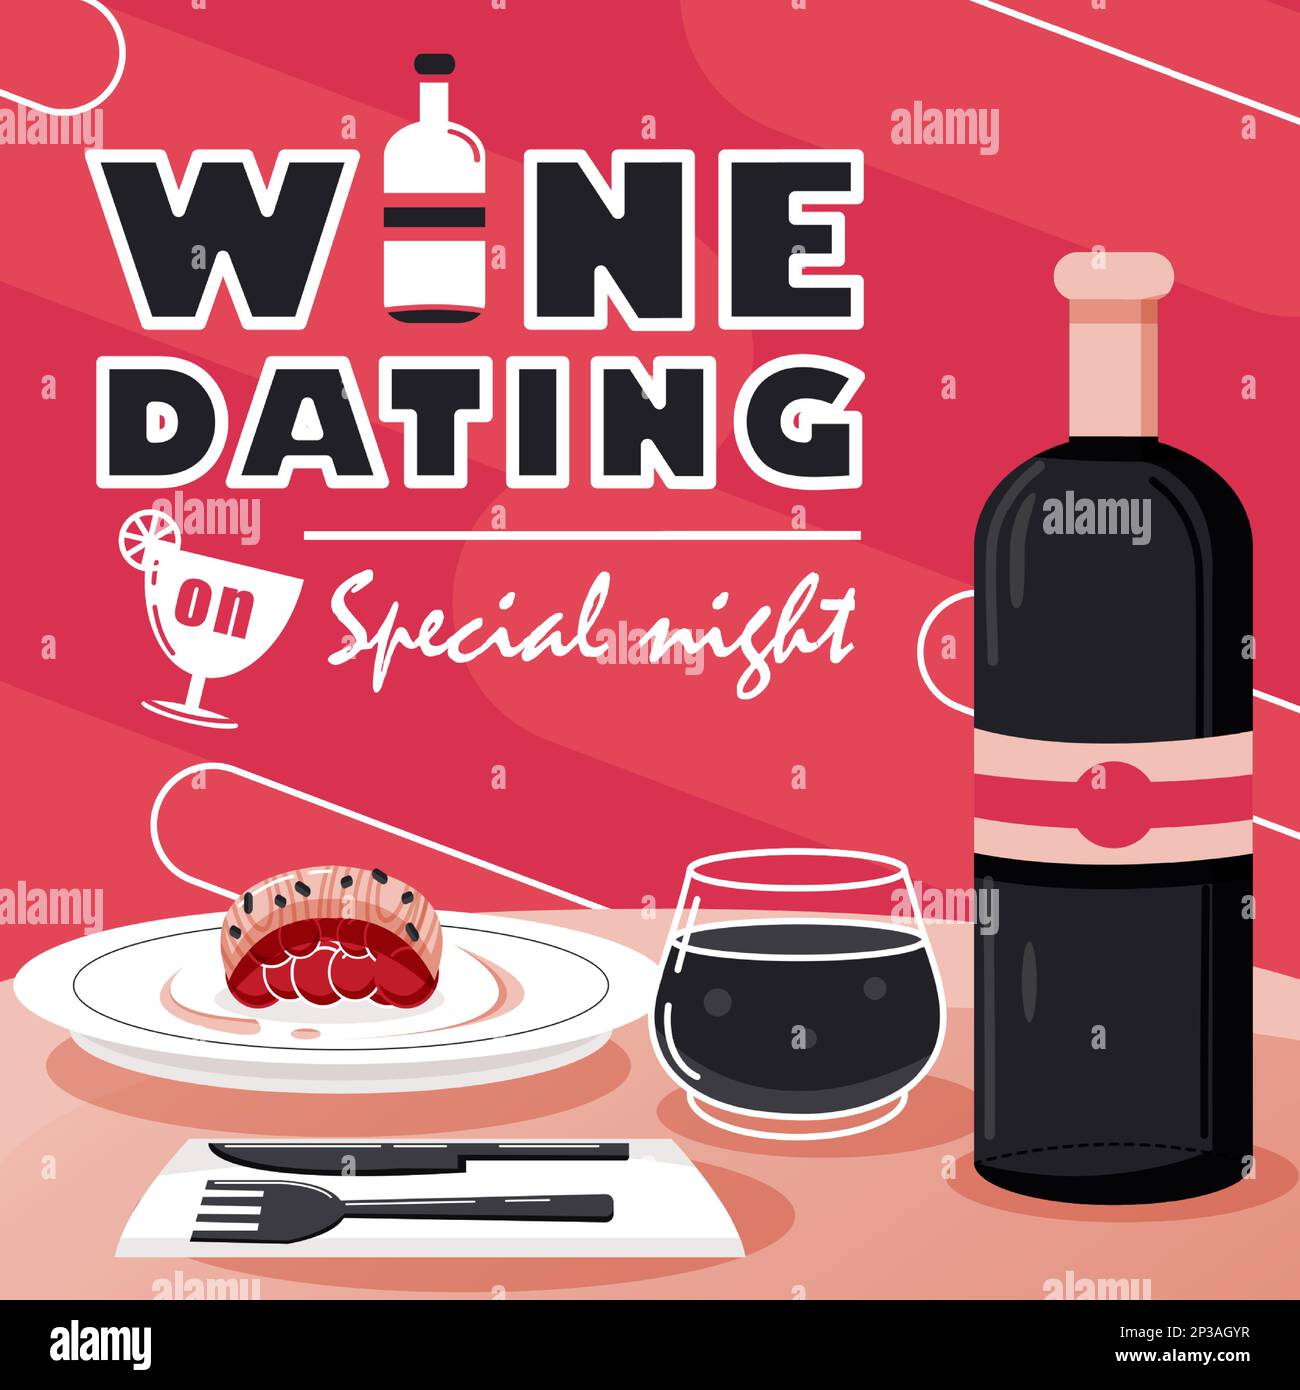 Wine Dating en una noche especial, cena y una botella de vino. Adecuado para eventos Ilustración del Vector